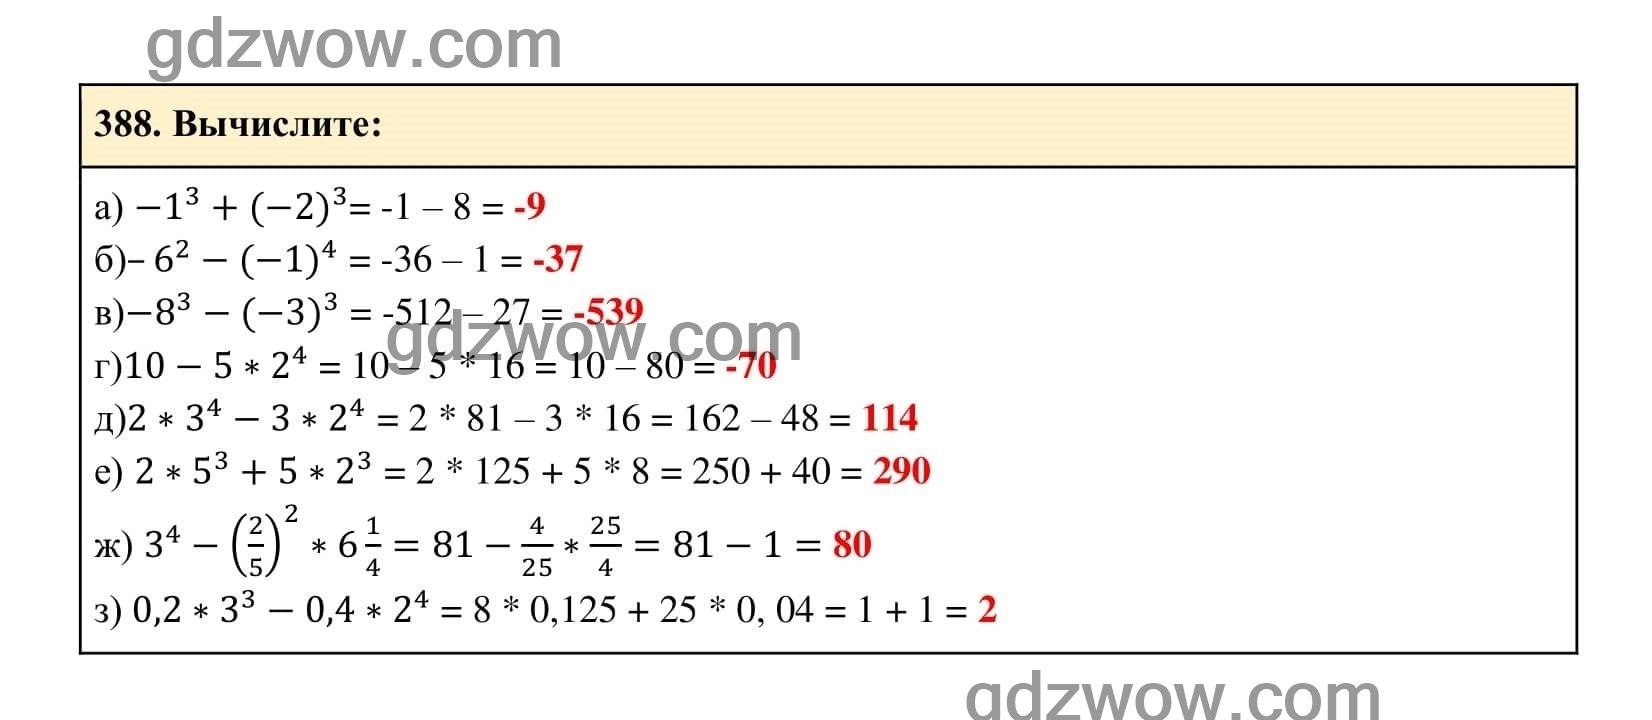 Упражнение 388 - ГДЗ по Алгебре 7 класс Учебник Макарычев (решебник) - GDZwow